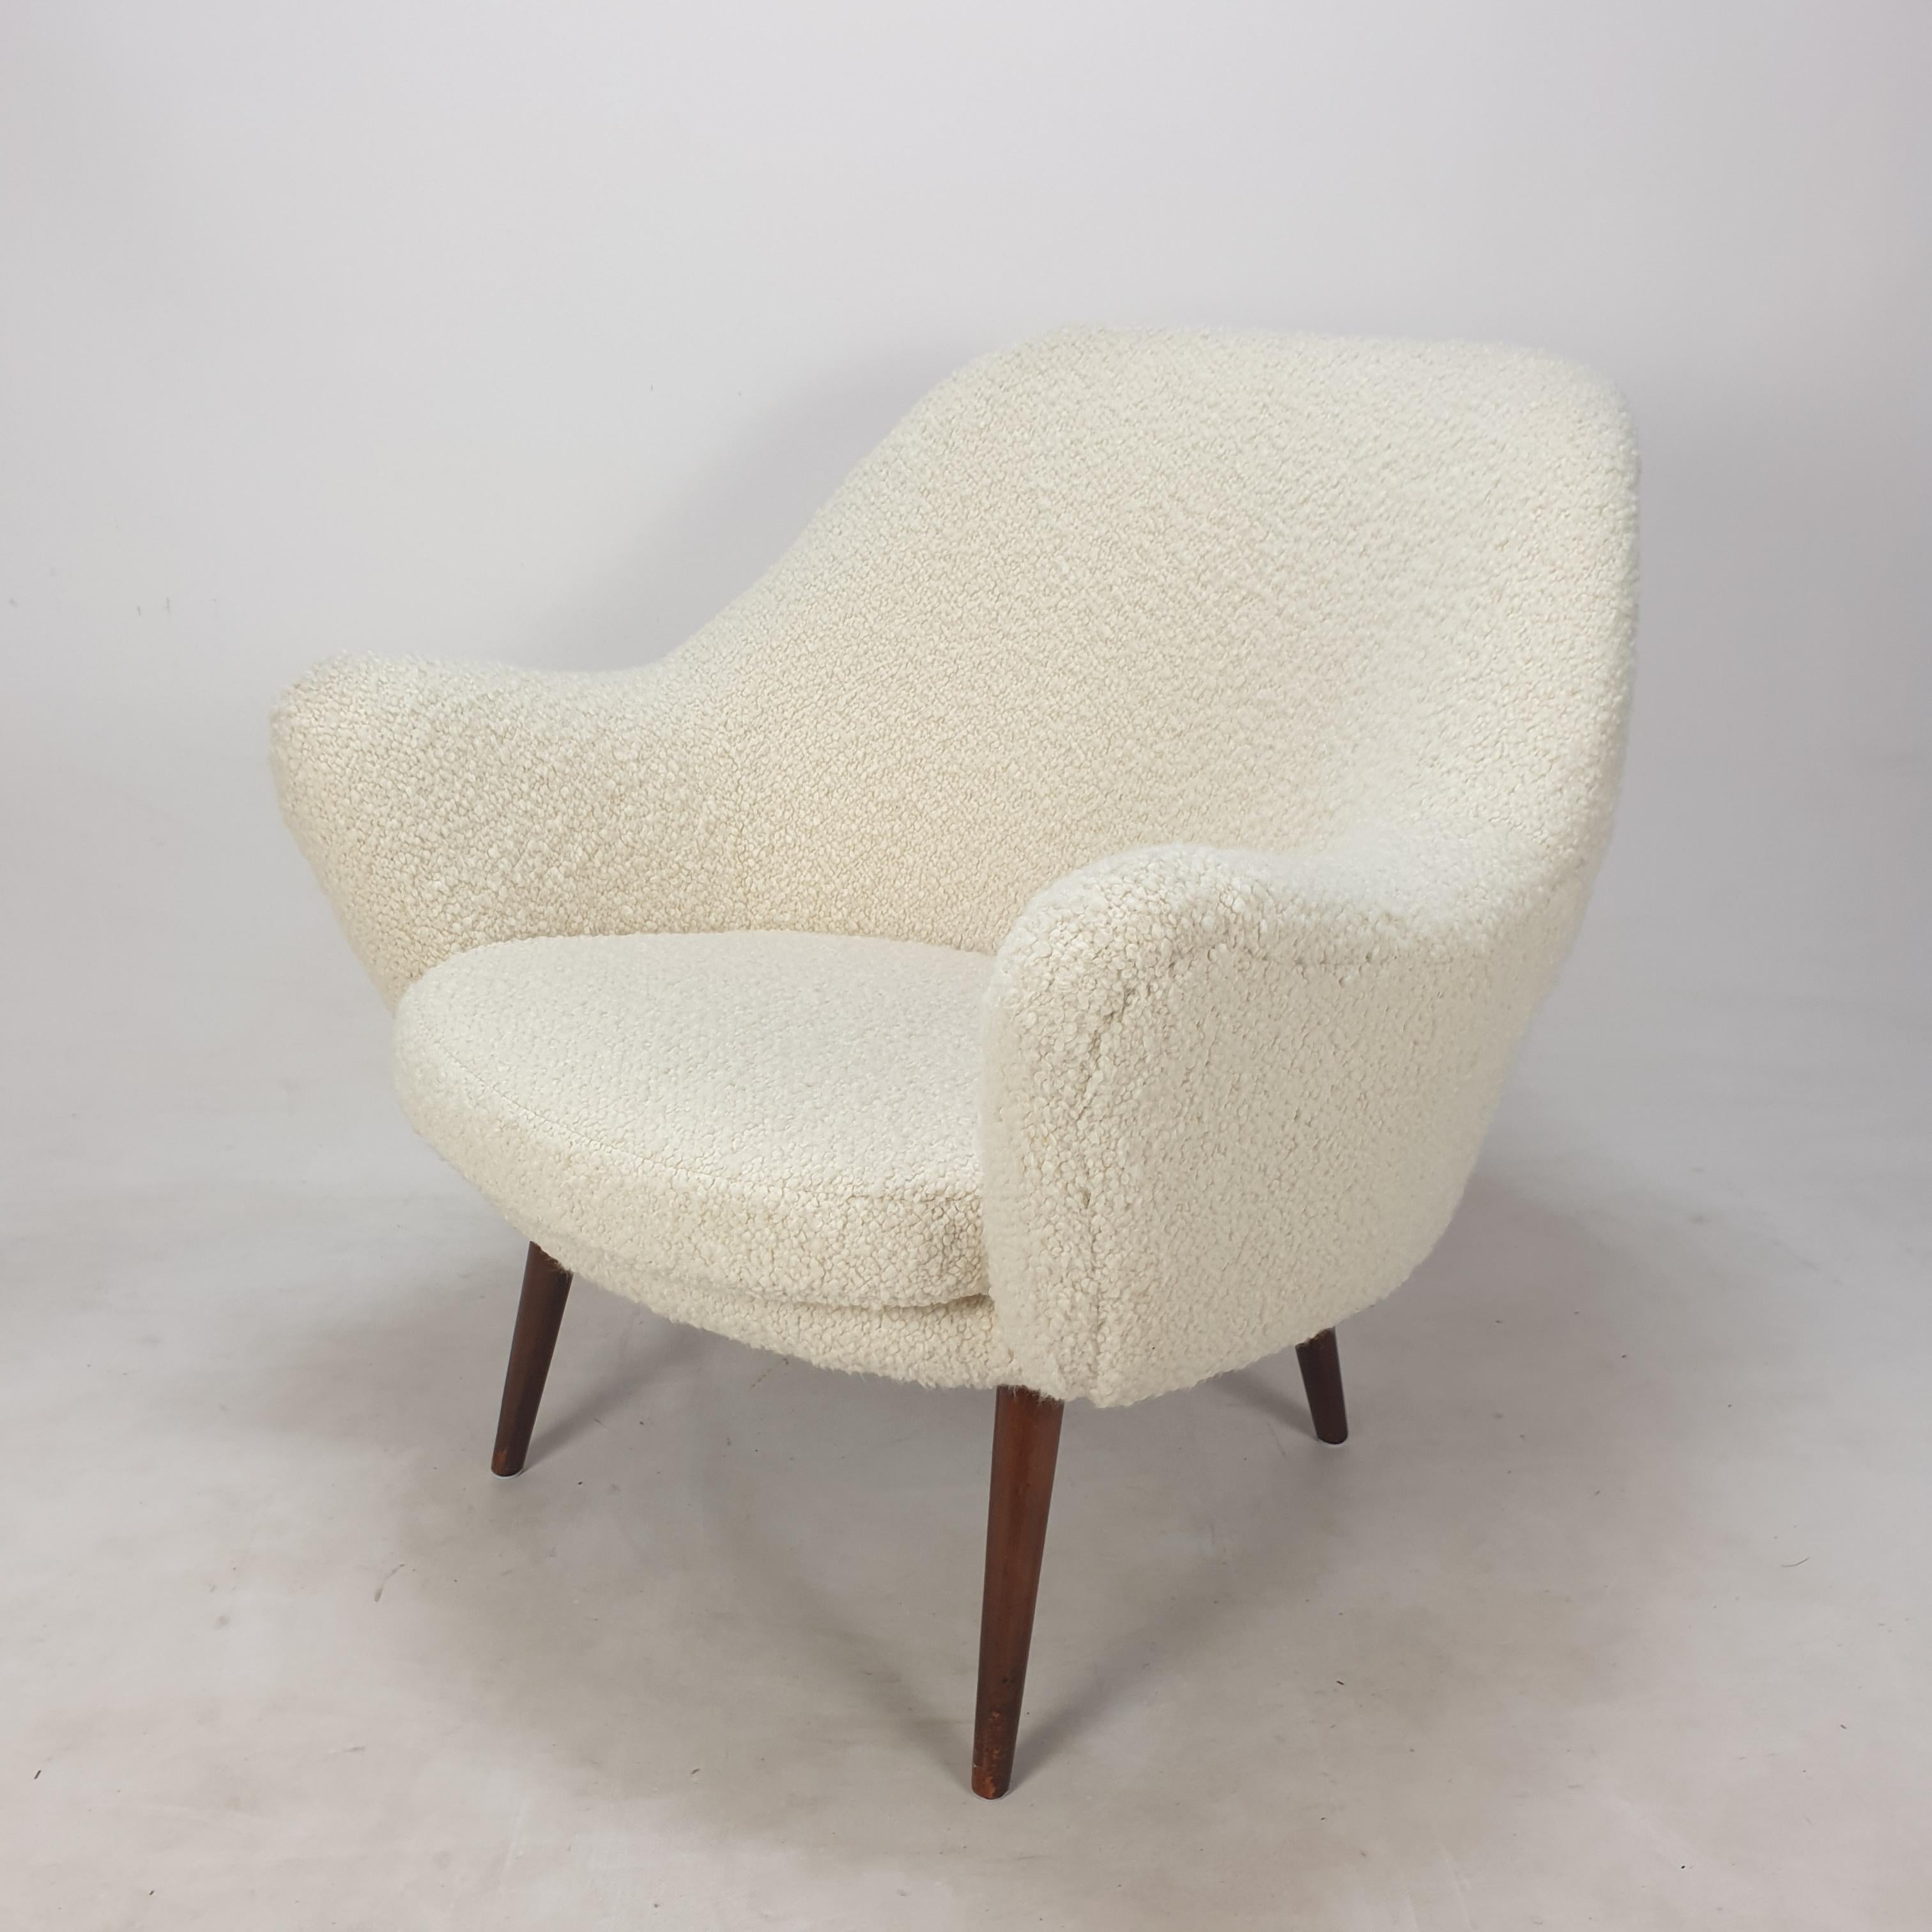 Superbe chaise longue conçue et produite en Scandinavie, dans les années 1950. 
Son siège est très confortable.

La chaise vient d'être restaurée avec une nouvelle mousse et un nouveau tissu, elle est donc en parfait état.

Elle a été